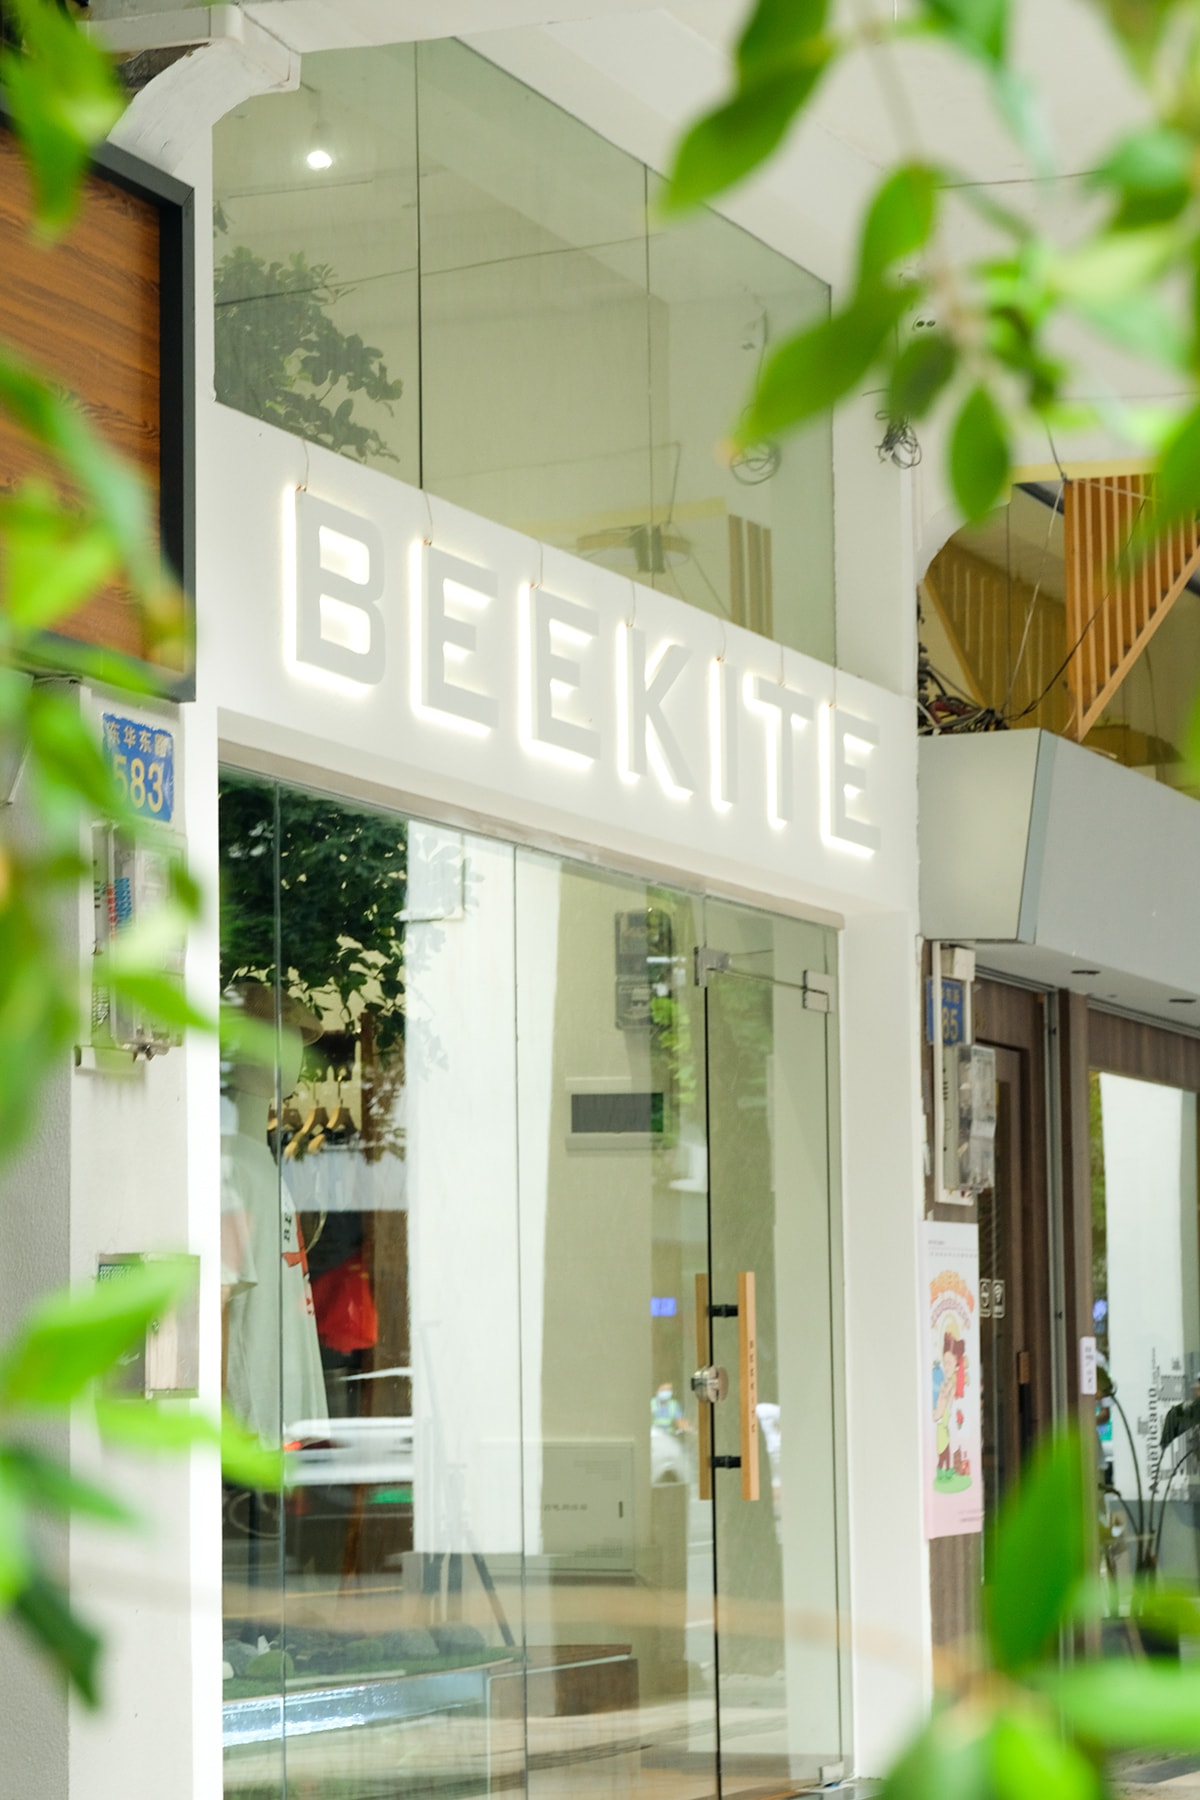 走进围绕生活与服饰的 BEEKITE 品牌店铺